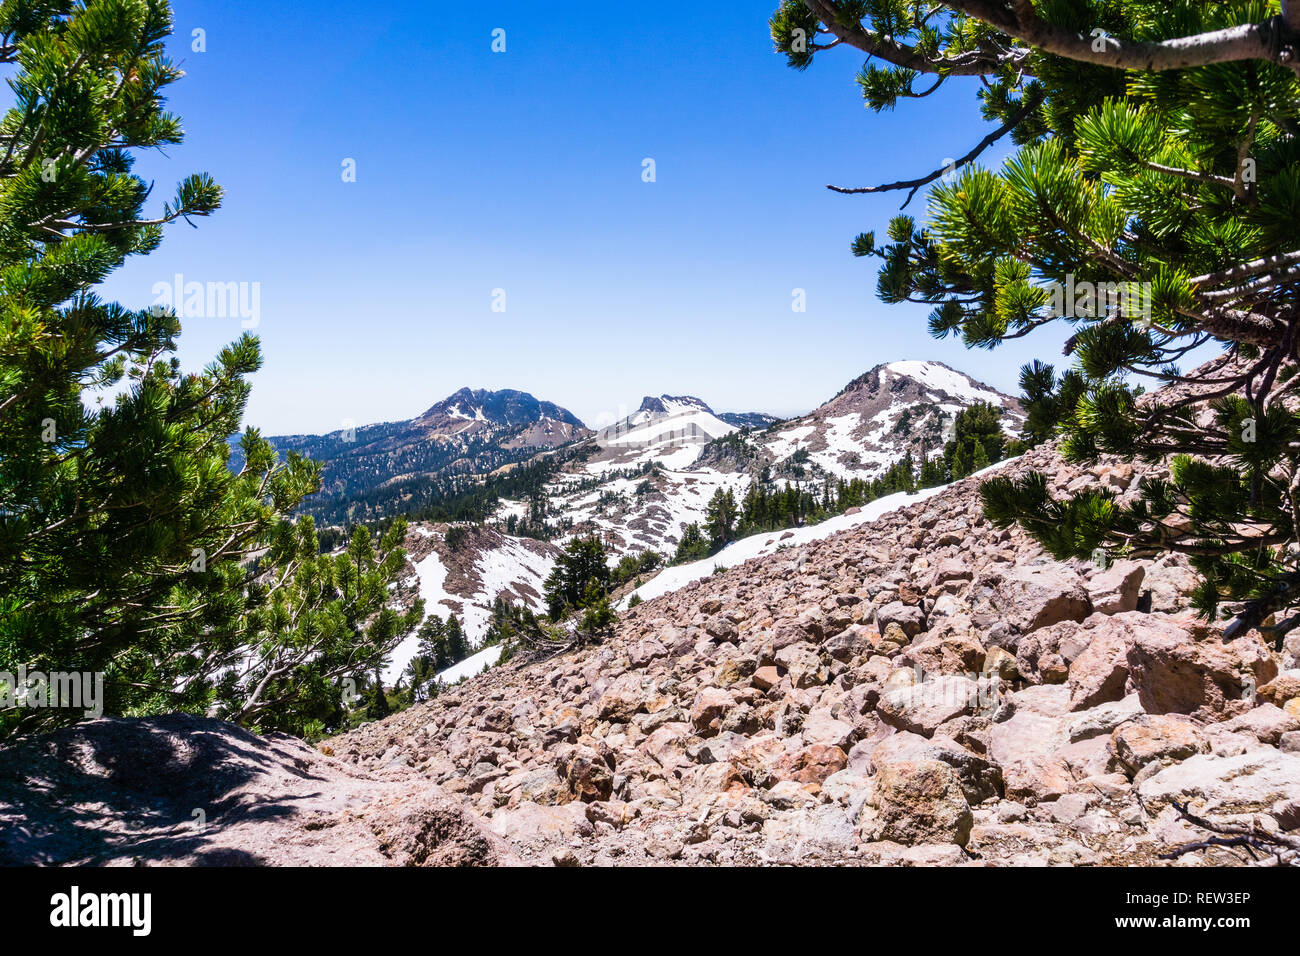 Höhe Landschaft in den Lassen Volcanic National Park mit Gipfeln und Pisten im Schnee von den Zweigen von Pinien umrahmt, Northern Californ Stockfoto